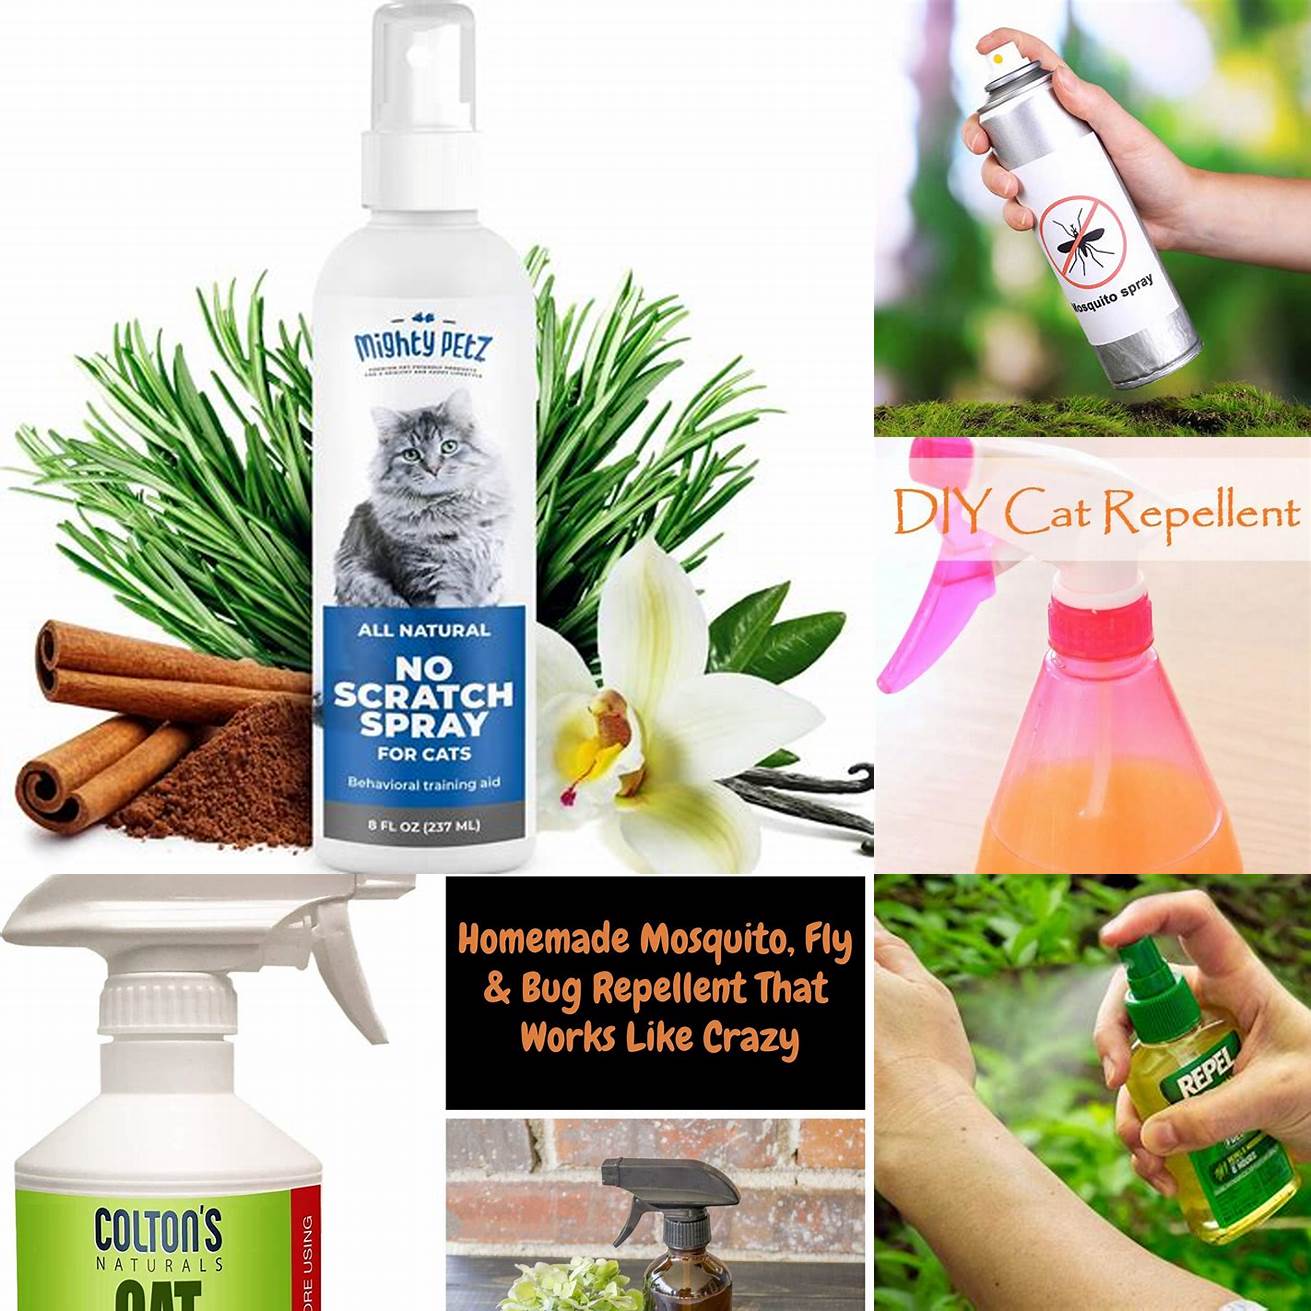 Using natural repellents